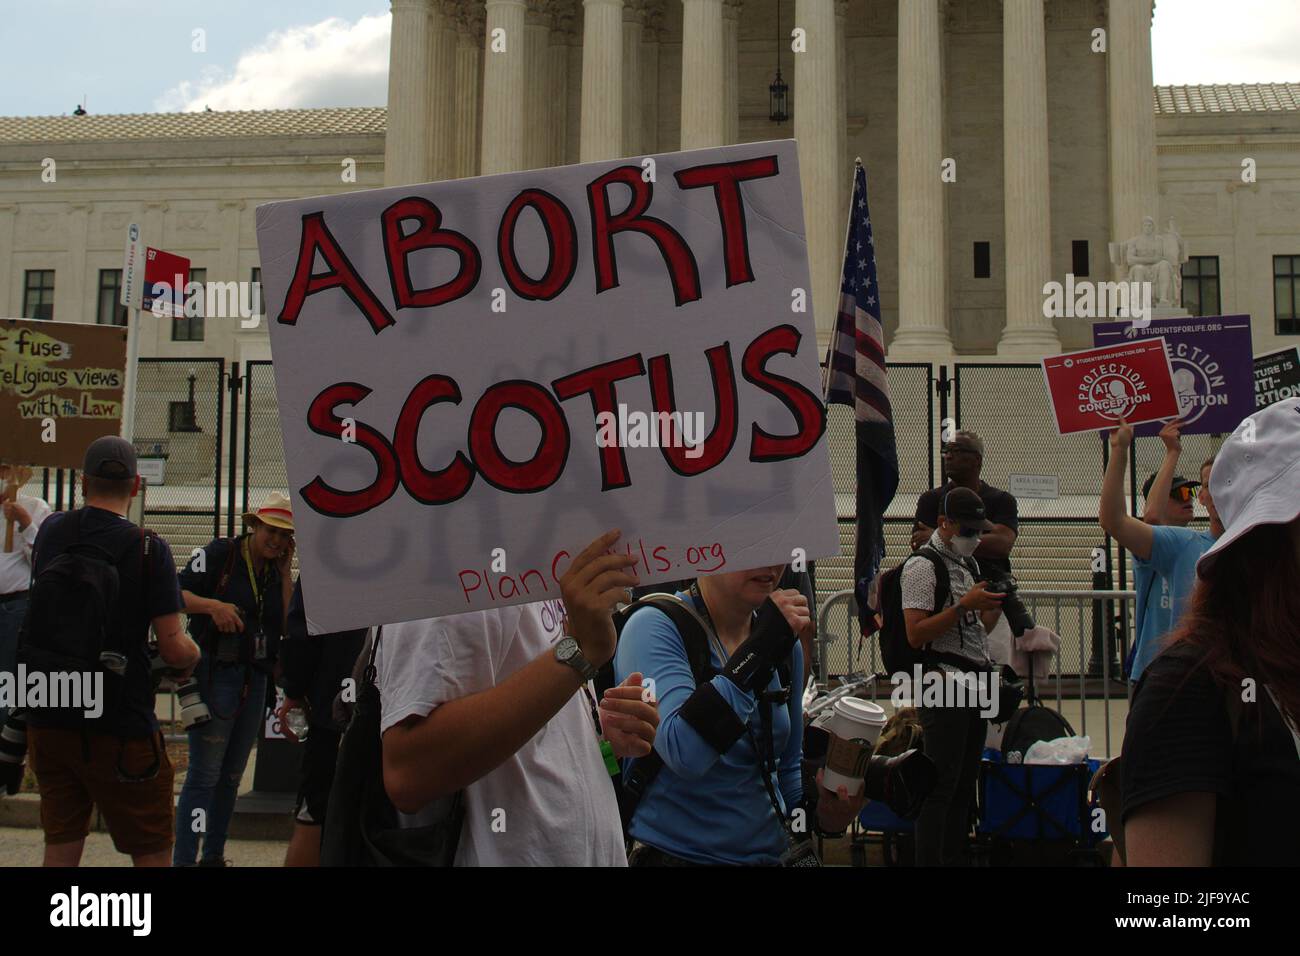 Demonstranten versammelten sich vor dem Obersten Gerichtshof der USA, nachdem die bahnbrechende Entscheidung von Roe v. Wade, die Abtreibung legalisiert, am 24. Juni 2022 aufgehoben wurde. Stockfoto